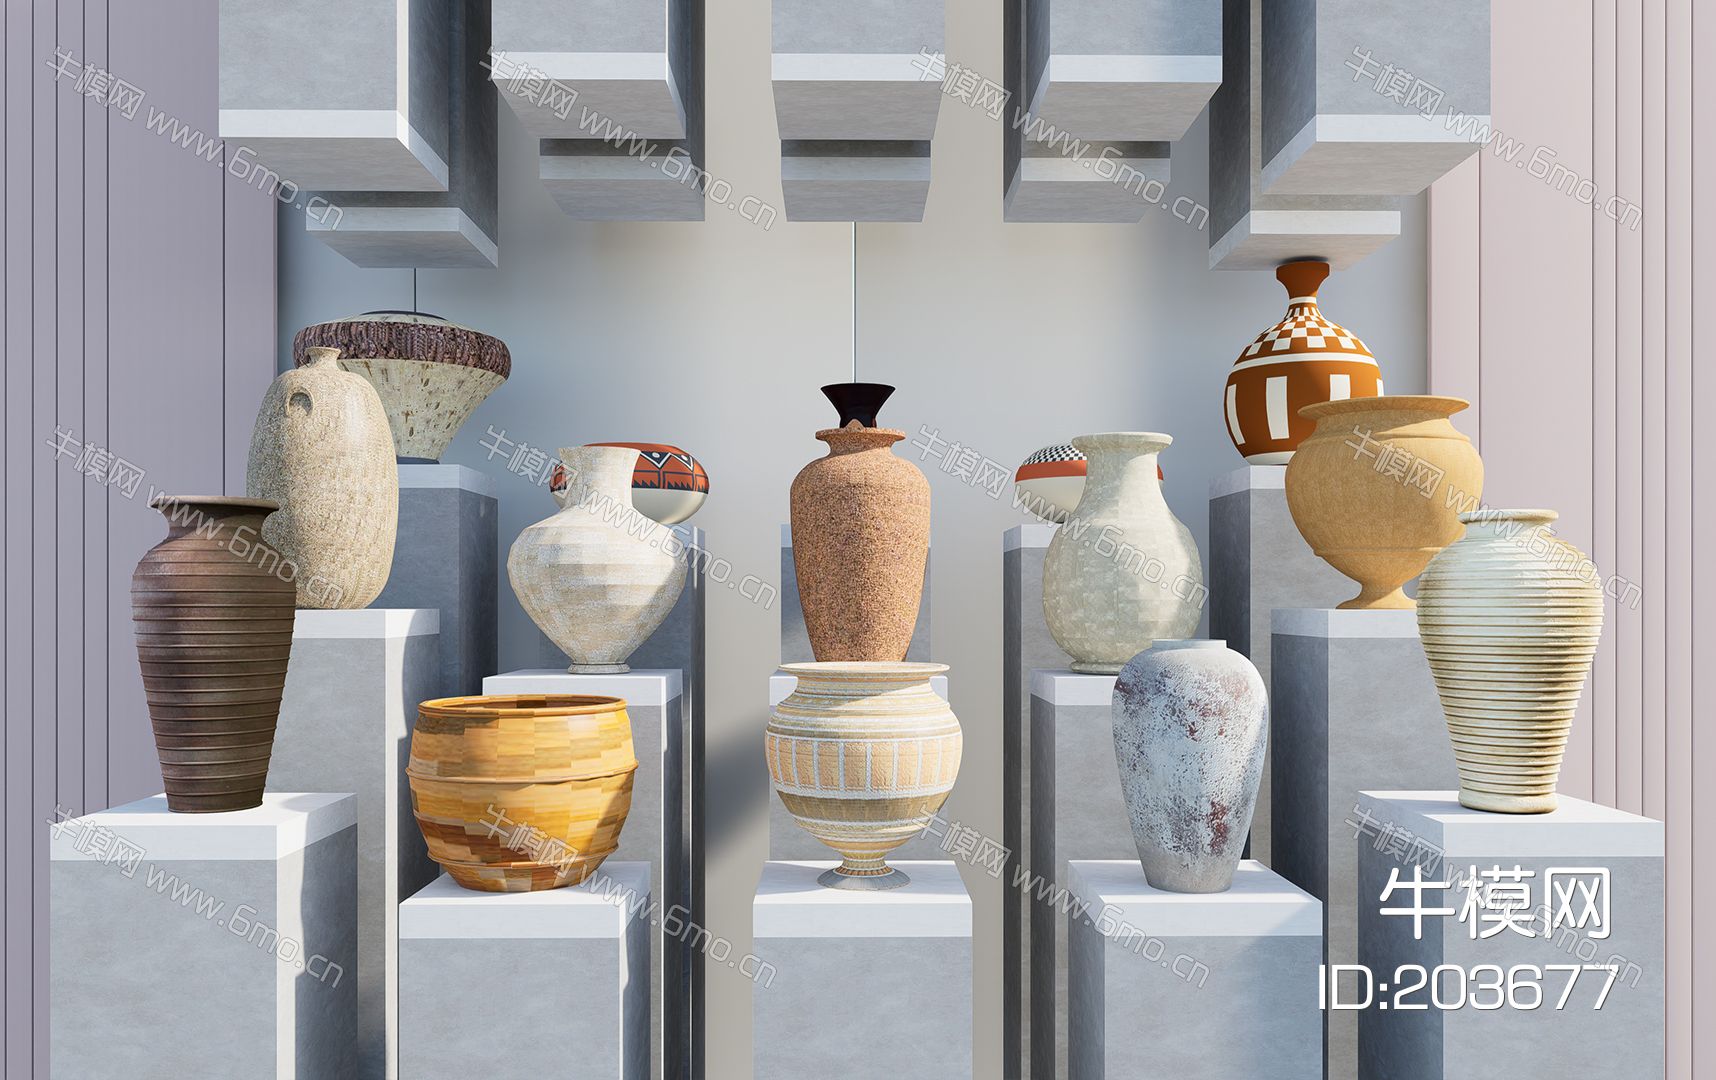  中式陶器 瓷器摆件 陶器摆件 古朴 素色陶器